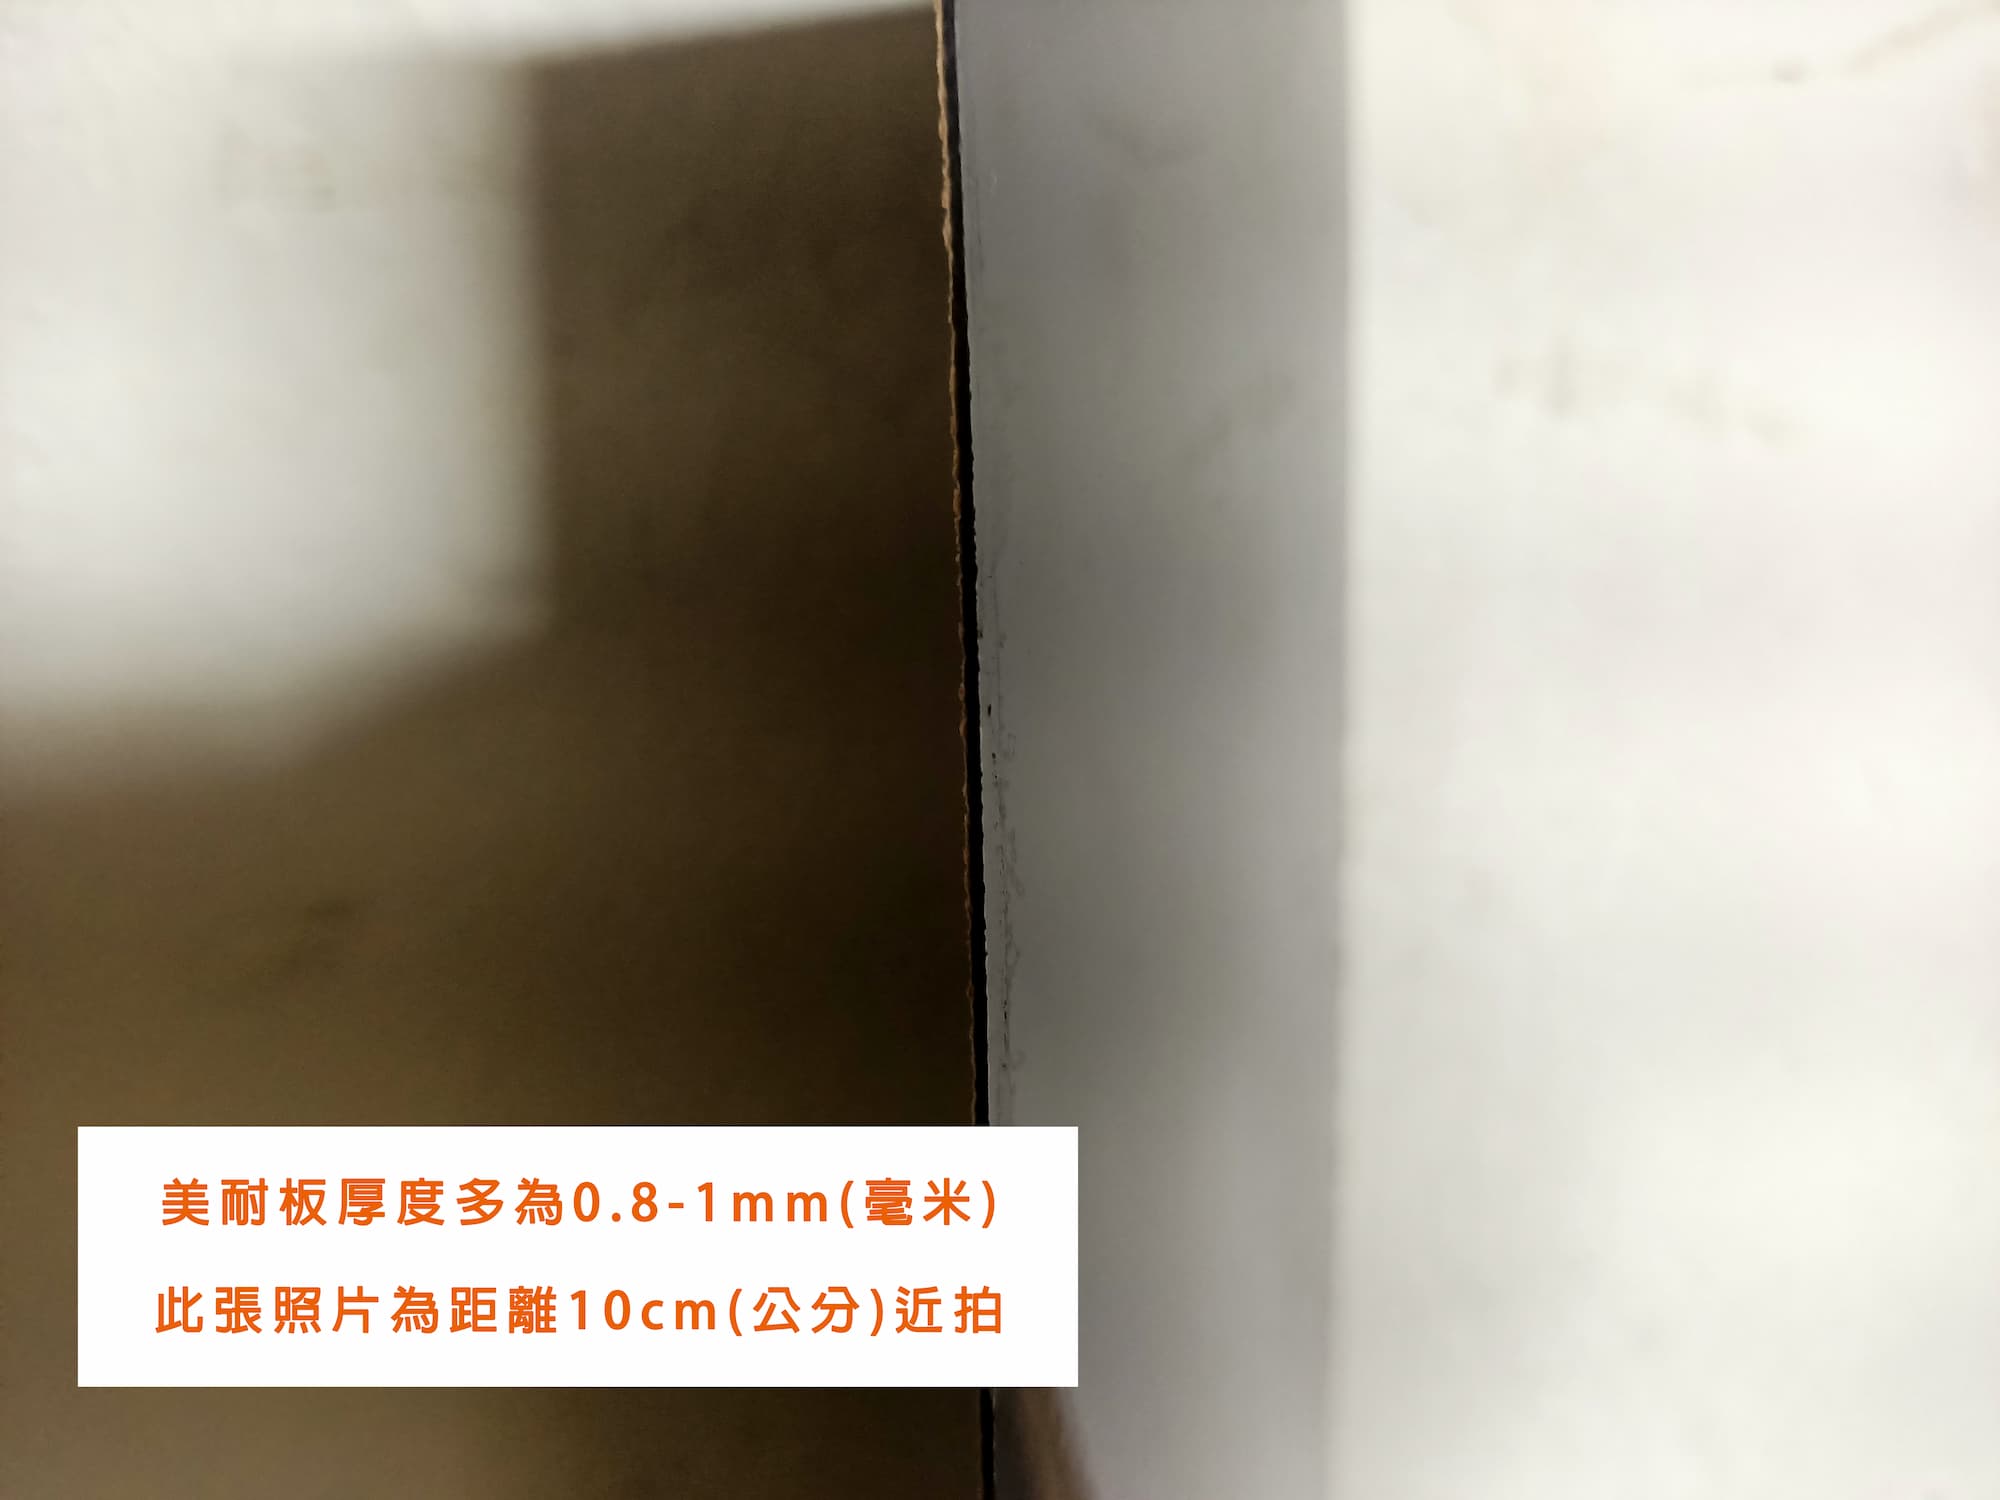 美耐板厚度多為0.8-1mm(毫米)，此張照片為距離10cm(公分)近拍